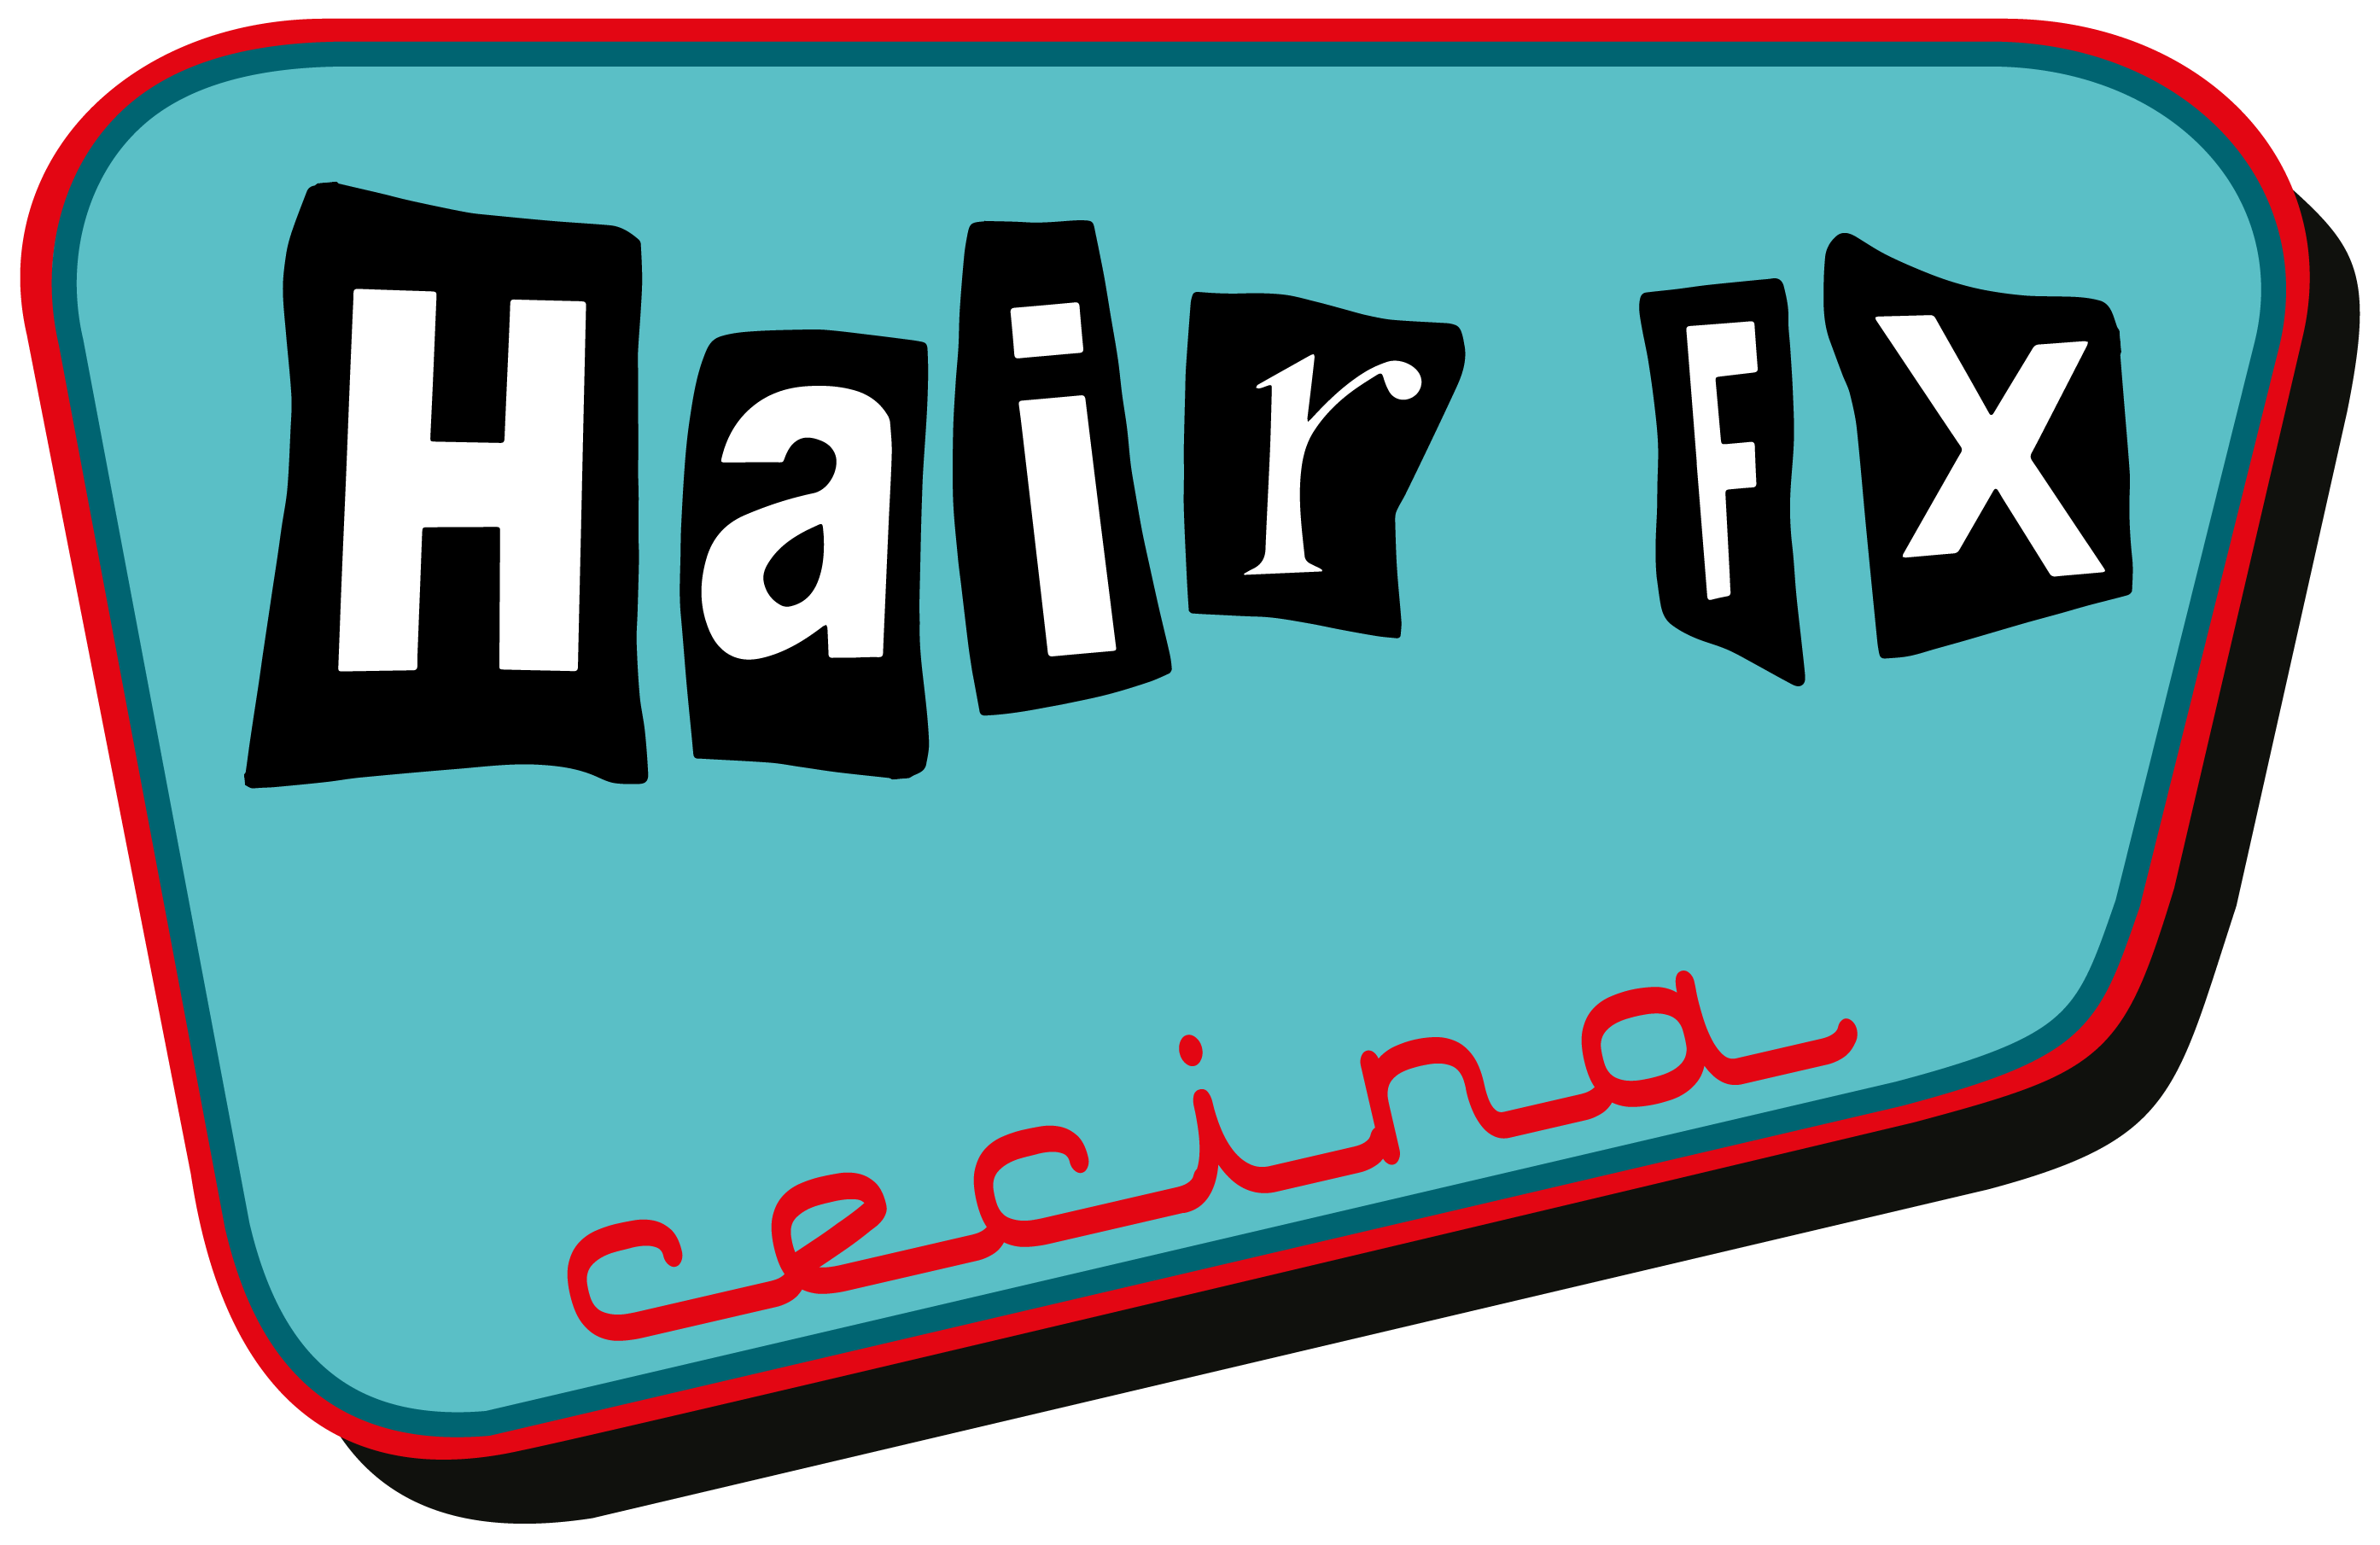 HairFX Cecina